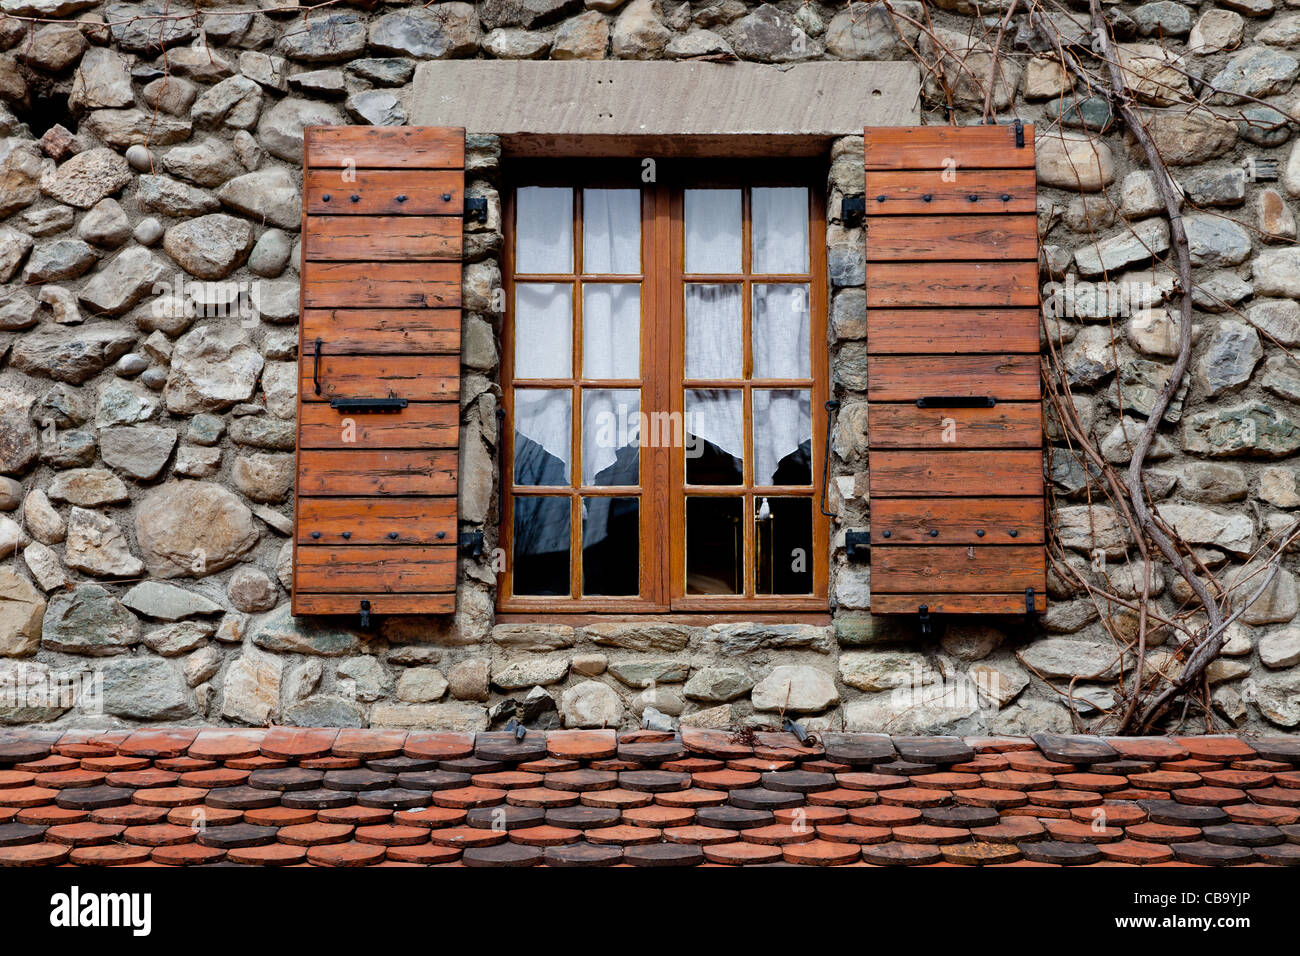 Typische Fenster auf einem Stein gebautes Haus in Frankreich mit hölzernen Fensterläden Stockfoto